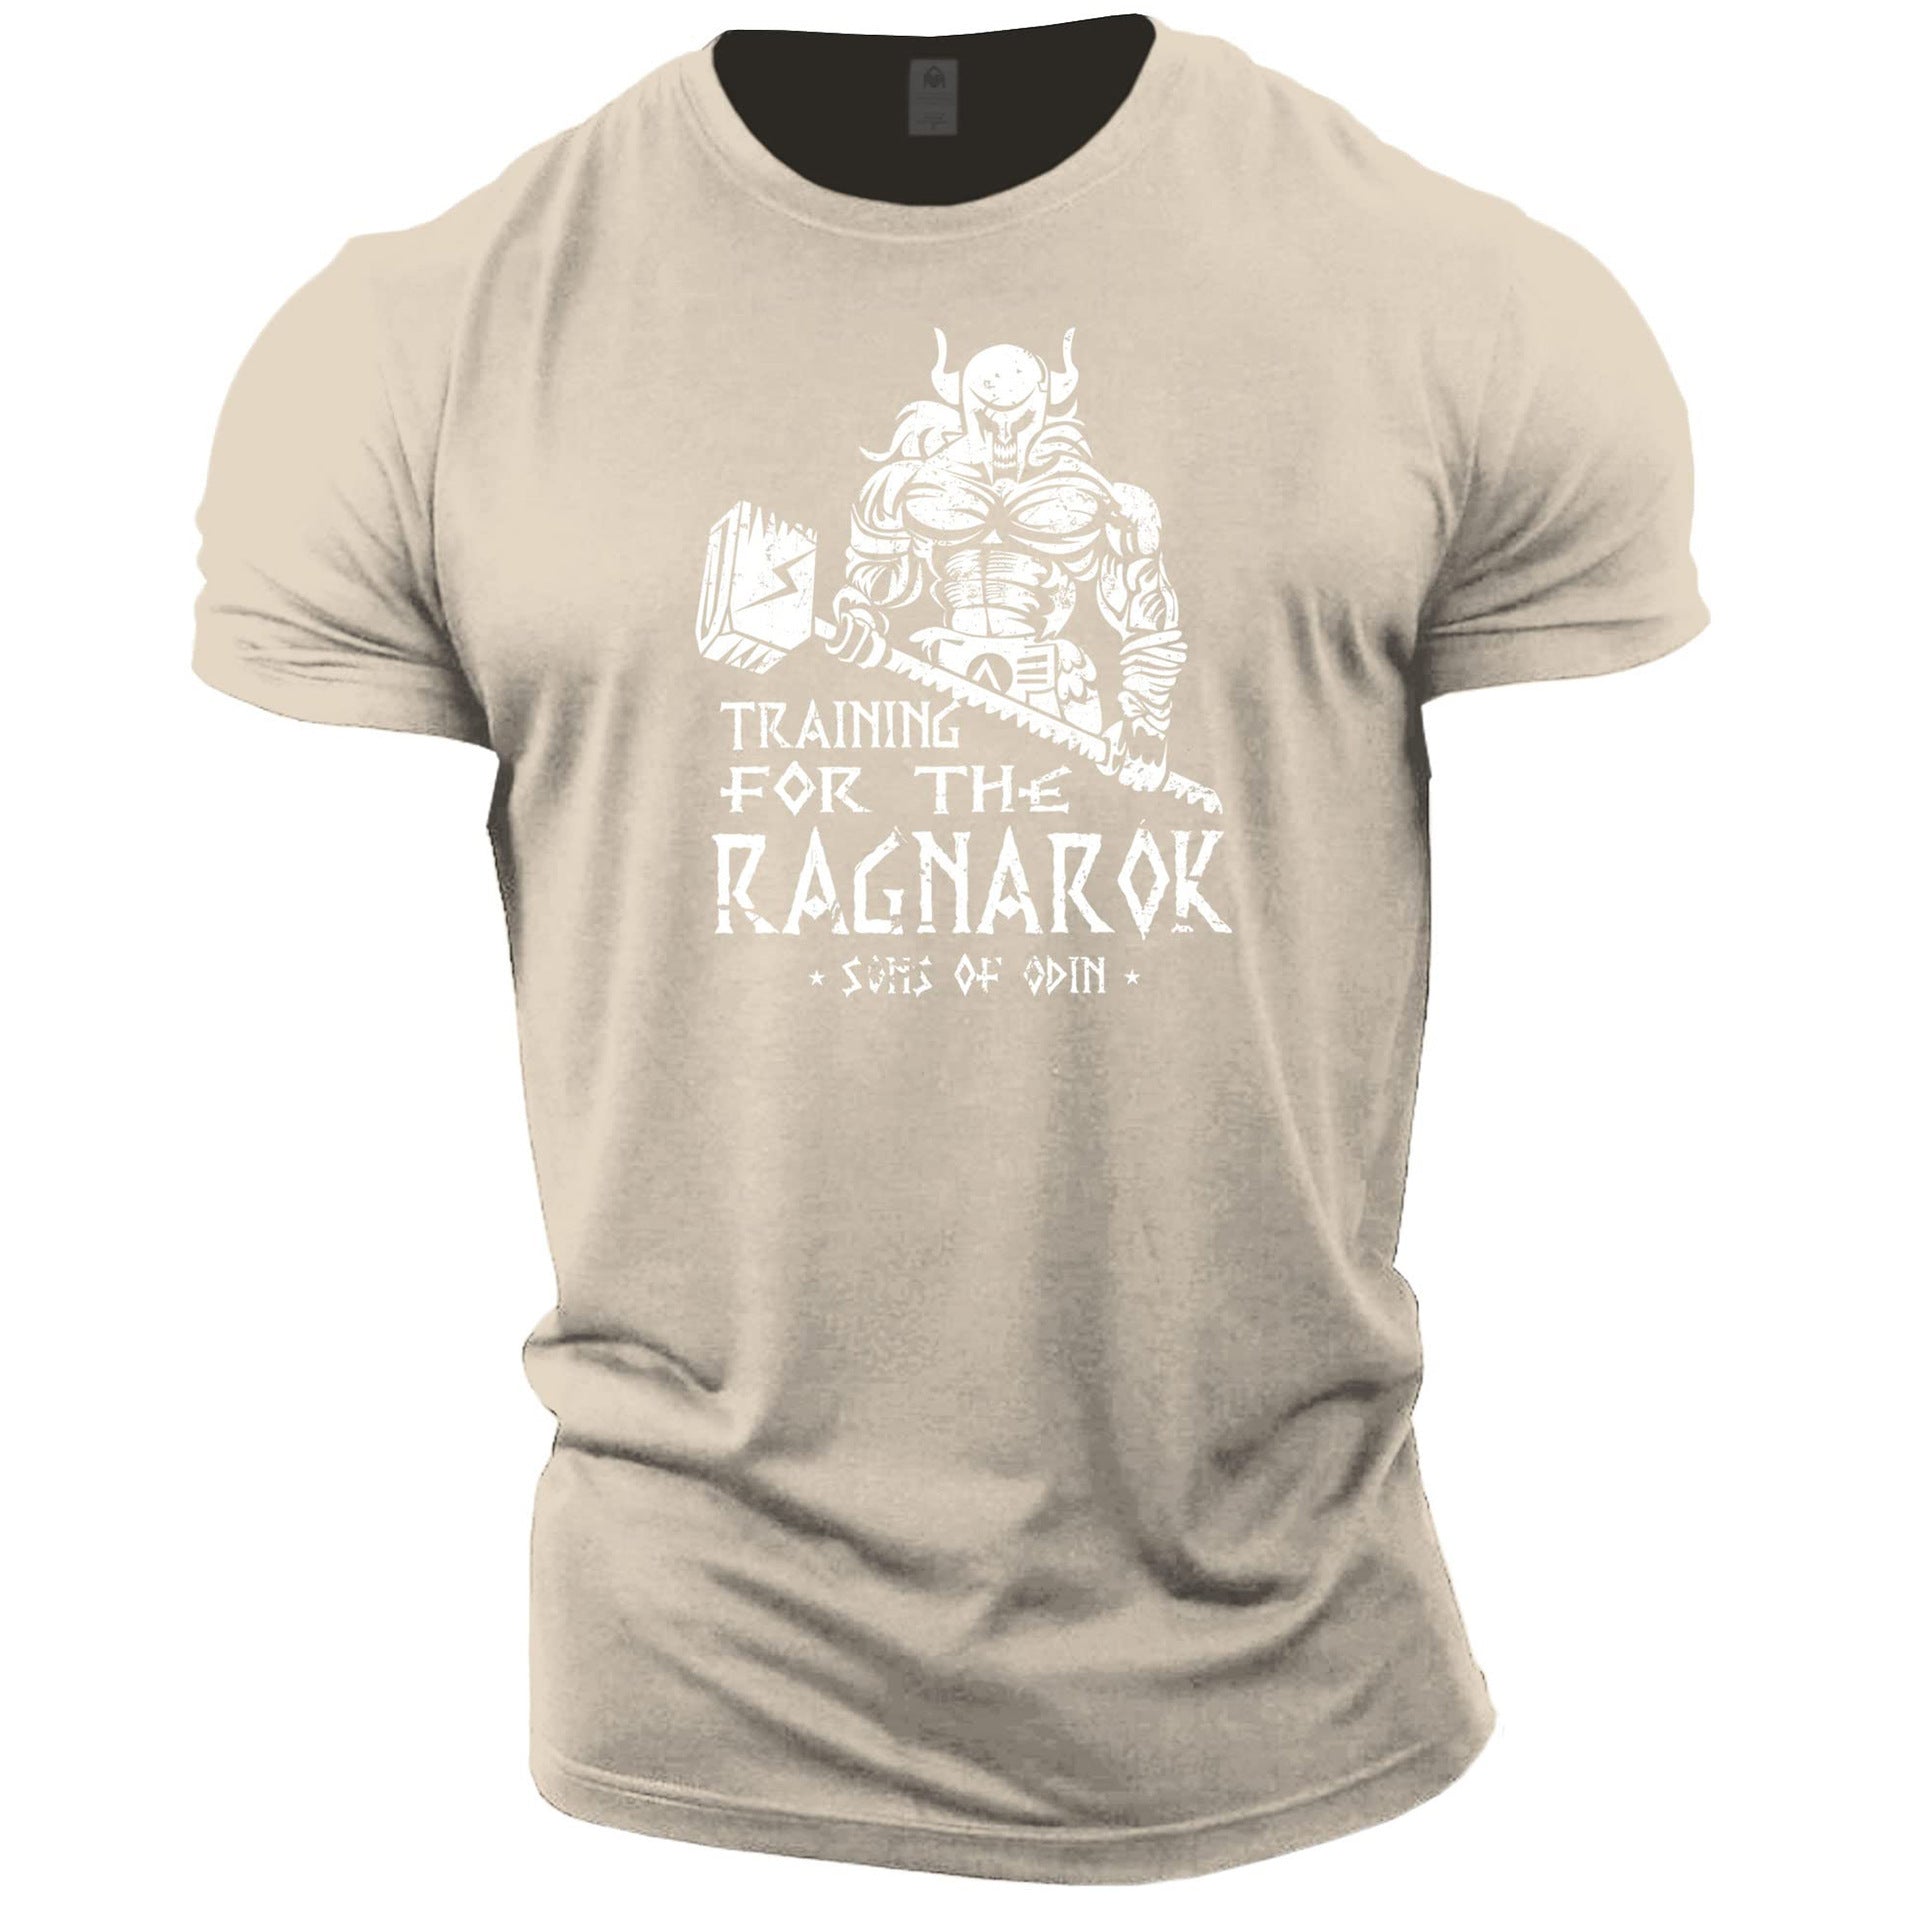 Training for the Ragnarok T-Shirt